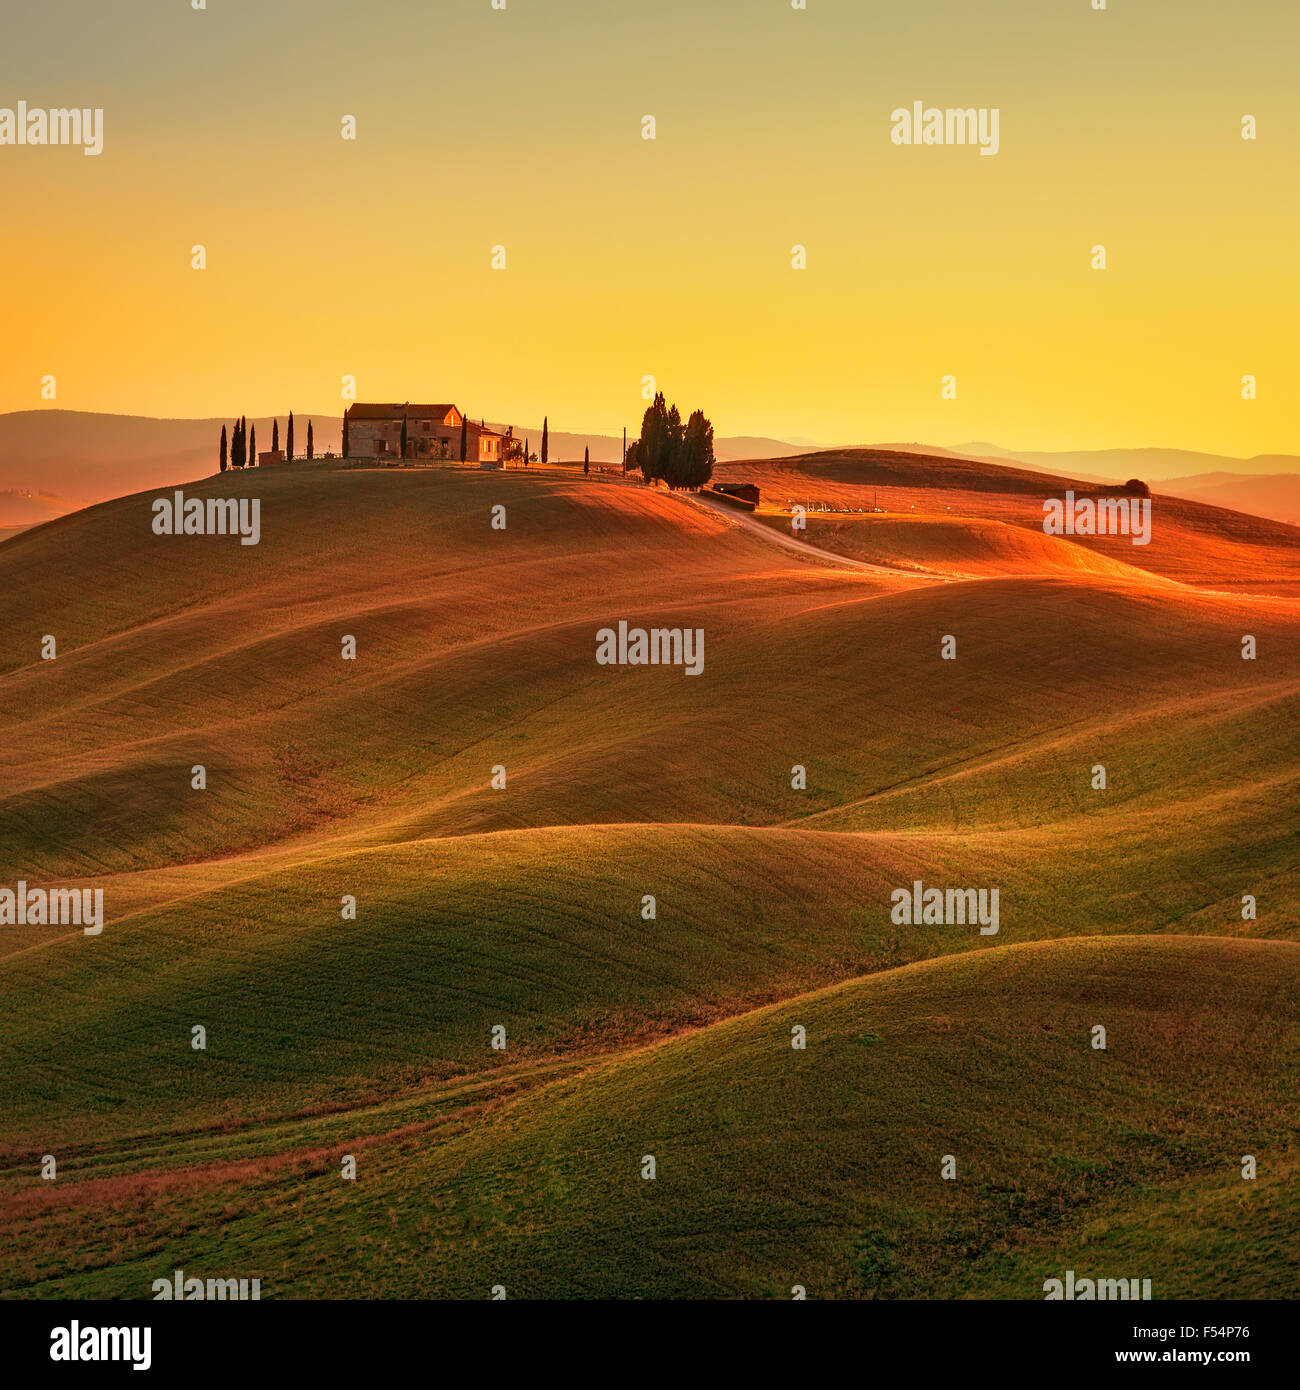 La toscane, paysage rural dans la région de Crete Senesi terre. Collines, campagne ferme, cyprès, arbres champ vert chaud sur le coucher du soleil. Banque D'Images